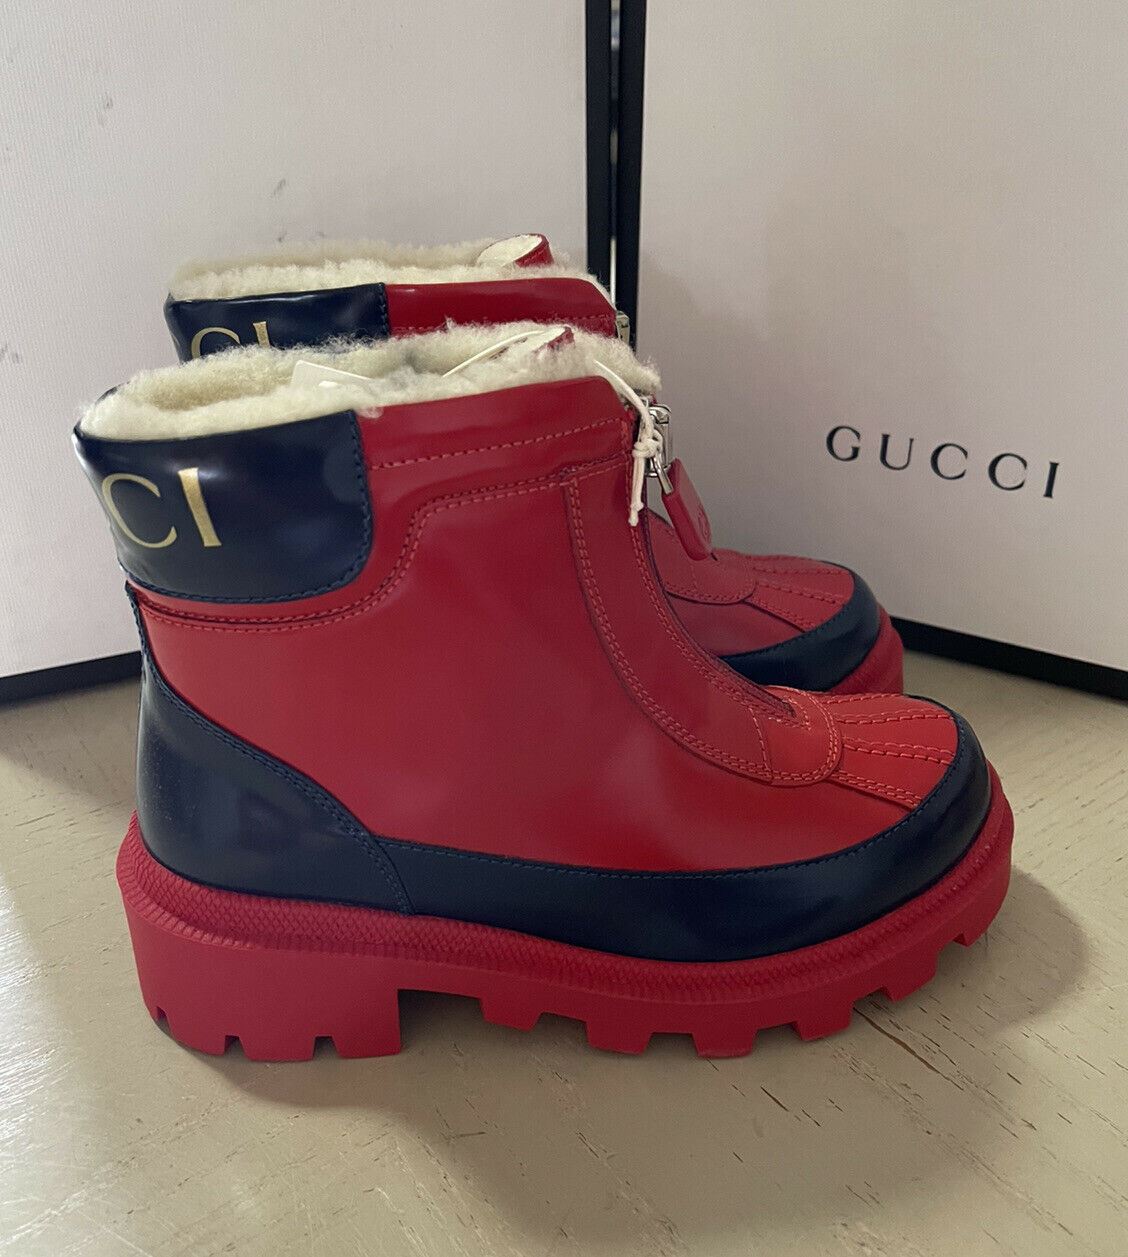 NIB Детские кожаные ботинки Gucci на подкладке из искусственного меха, красный/черный 32/1, возраст США 6,5 лет